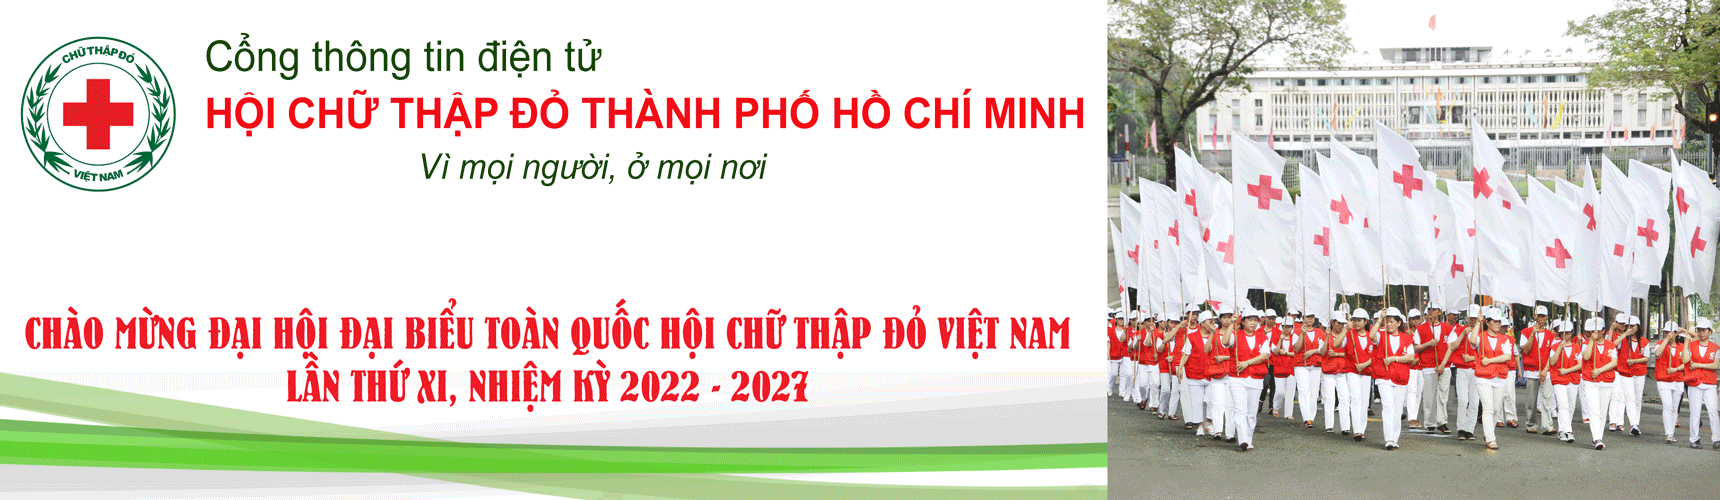 Hội Chữ thập đỏ Thành phố Hồ Chí Minh | Hội Chữ thập đỏ TPHCM